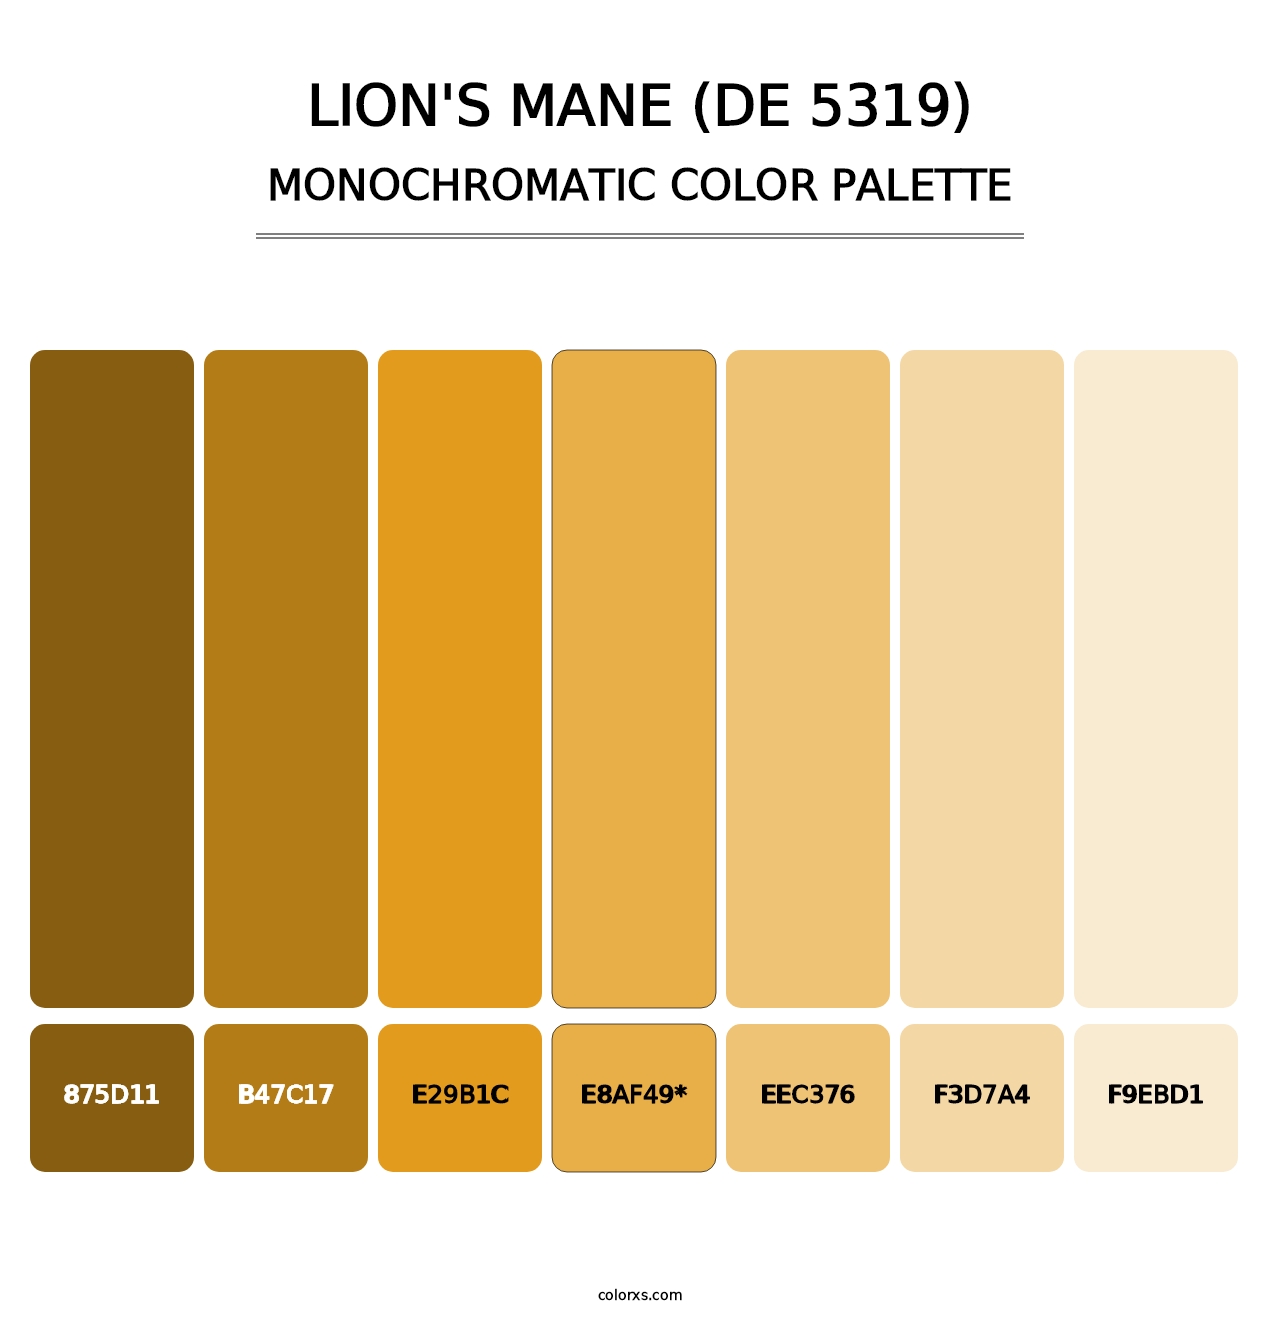 Lion's Mane (DE 5319) - Monochromatic Color Palette